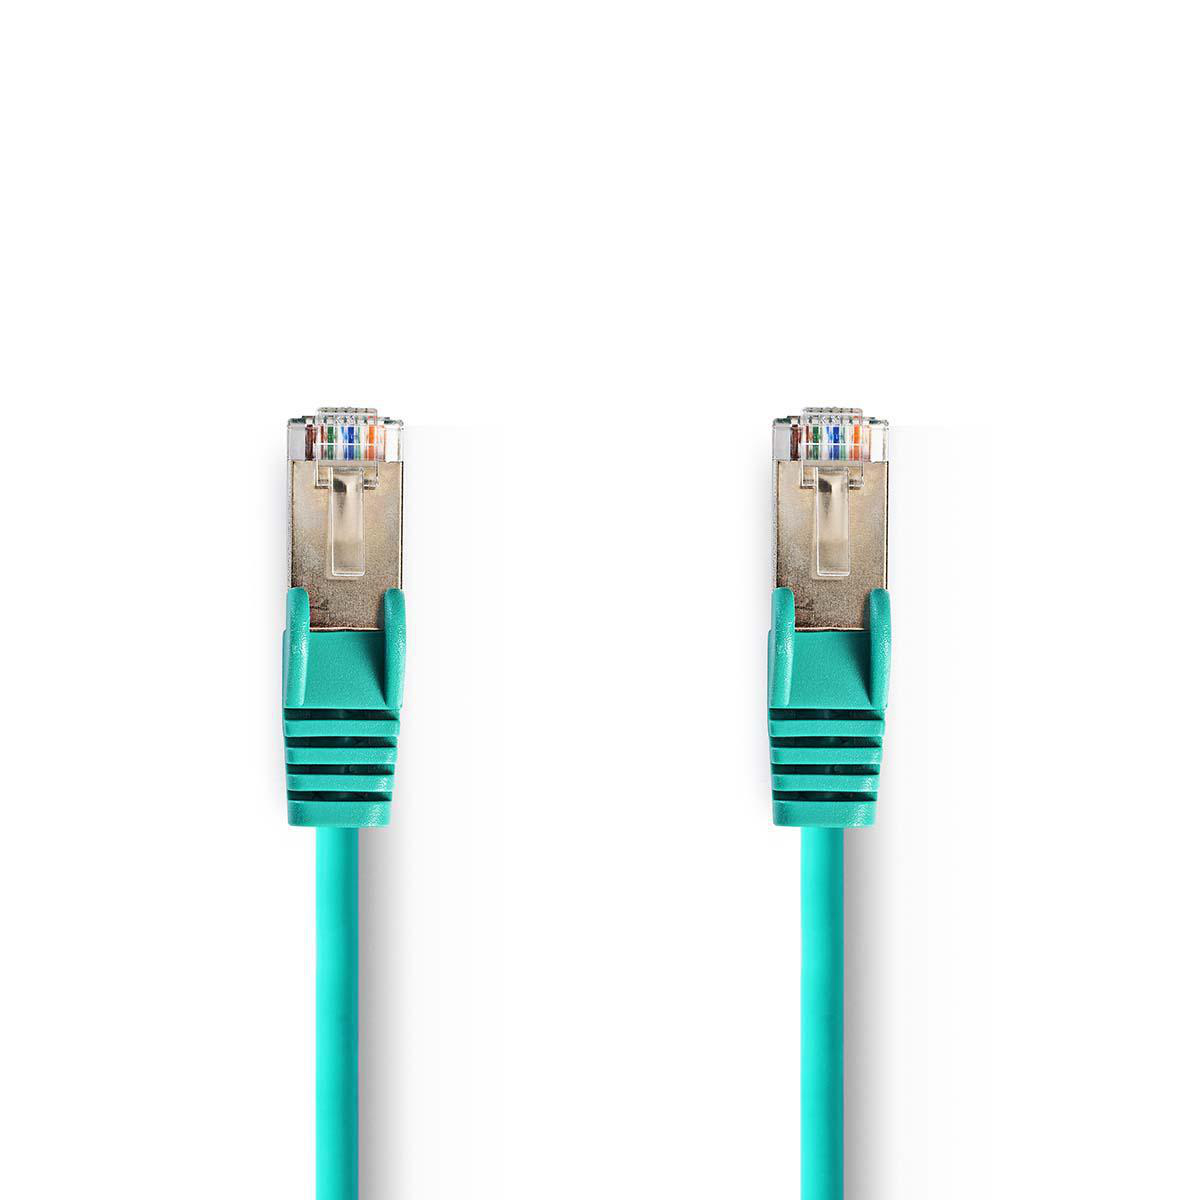 Nedis síťový kabel SF/UTP CAT5e, zástrčka RJ45 - zástrčka RJ45, 3 m, zelená (CCGP85121GN30)